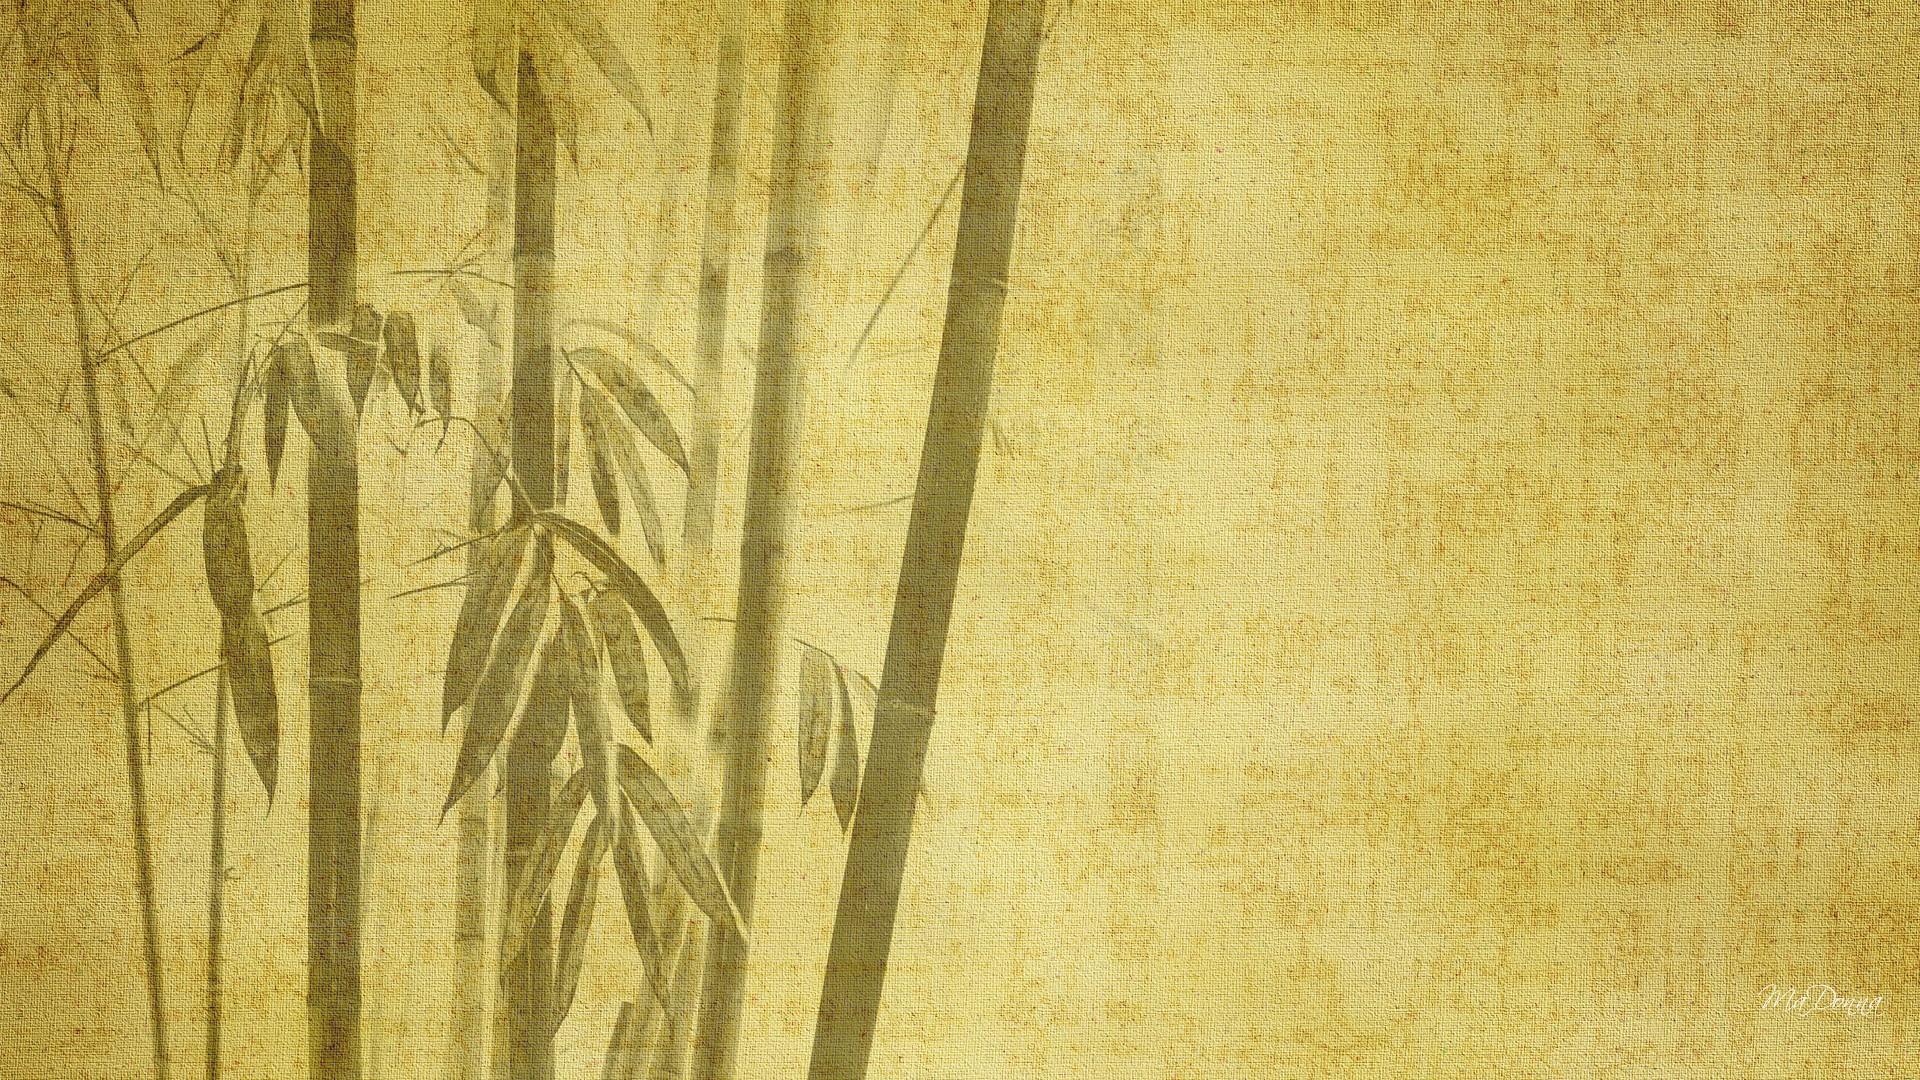 Bamboo HD Desktop Wallpaper for Widescreen, High Definition